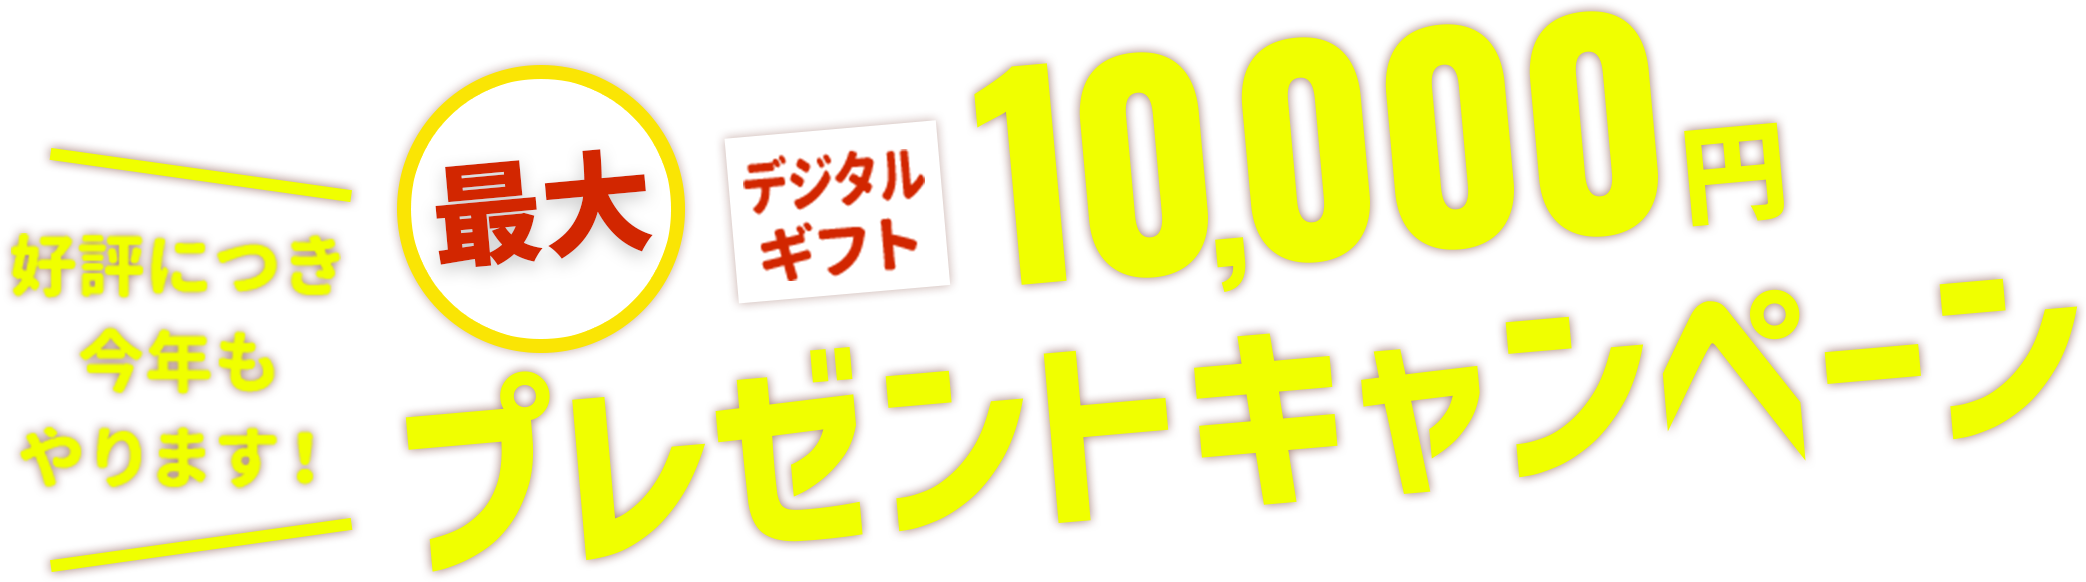 最大デジタルギフト10,000円プレゼントキャンペーン